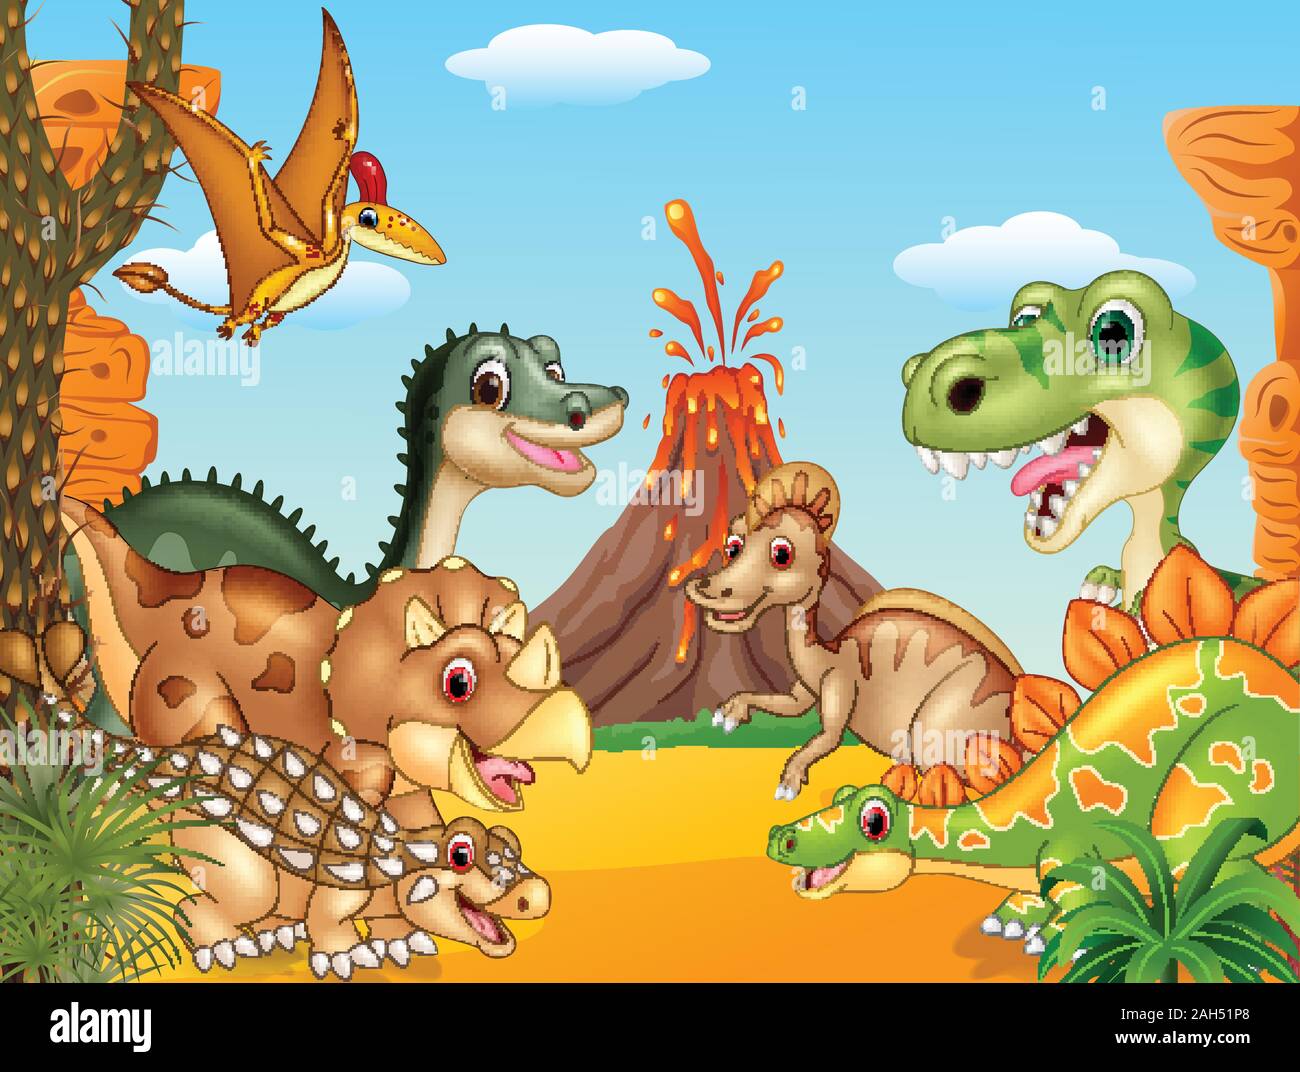 Cartoon happy dinosaurs with volcano Stock Vector